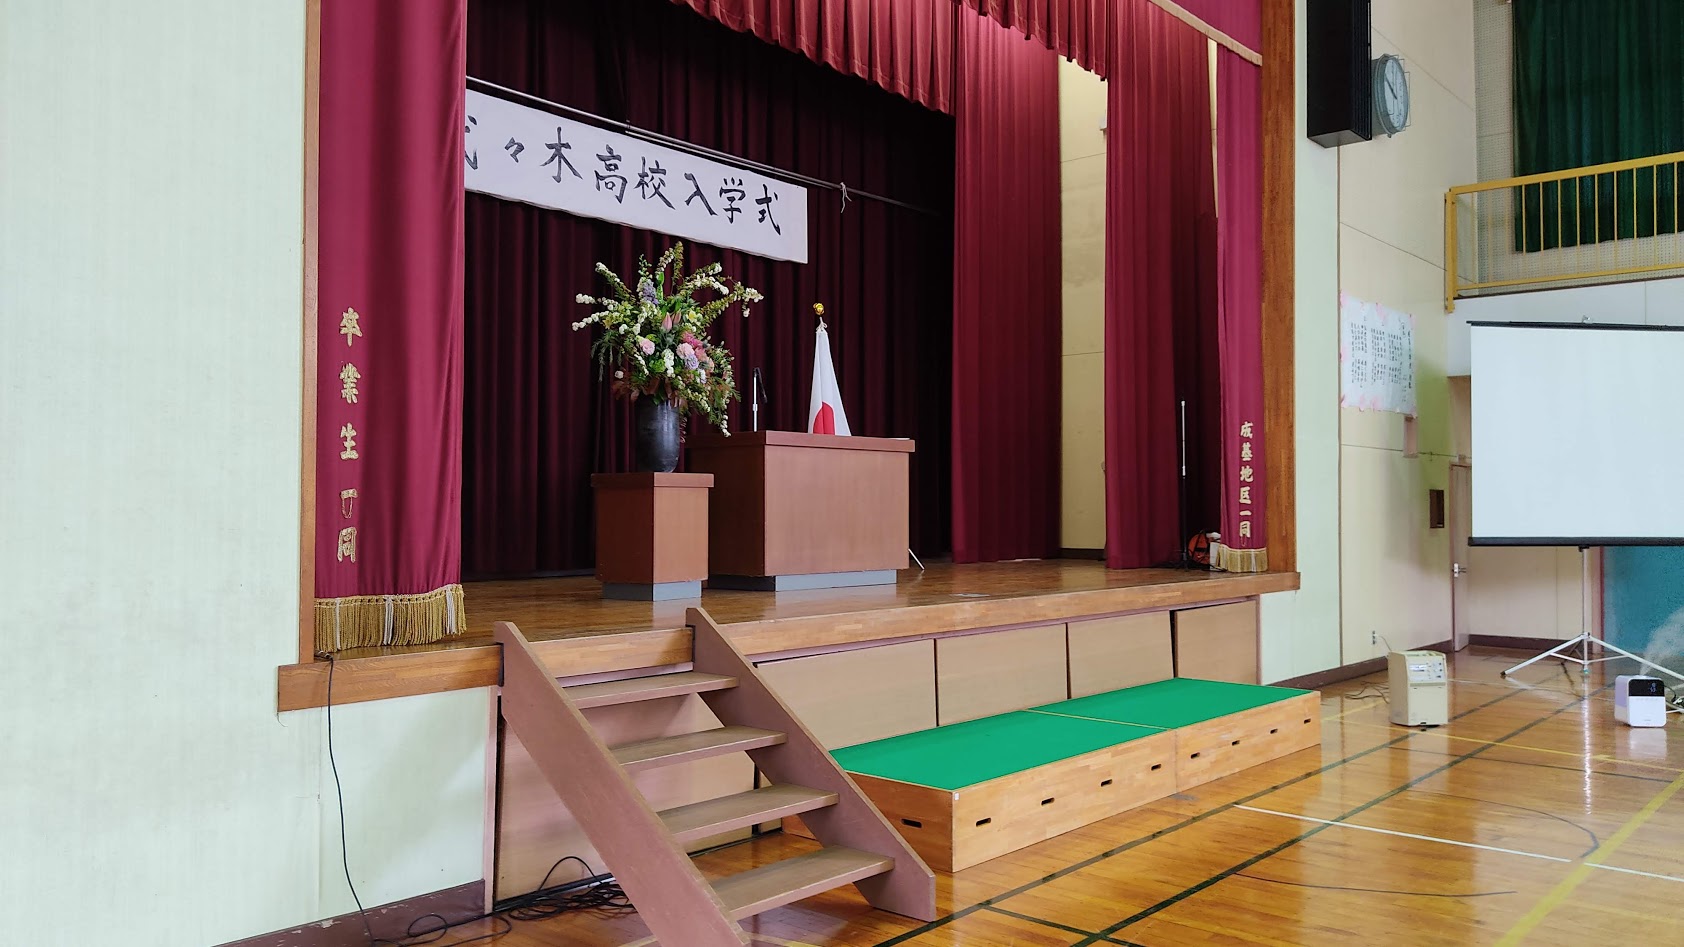 4月11日（日）、代々木高校志摩本校の入学式が行われました。前日10日には東京校の入学式が行われています。三重県知事様、志摩市長様より新入生に暖かい励ましのビデオメッセージをいただきました。入学式後、入学ガイダンスを行い、レポートやテストについて、クラブ活動について説明を行いました。